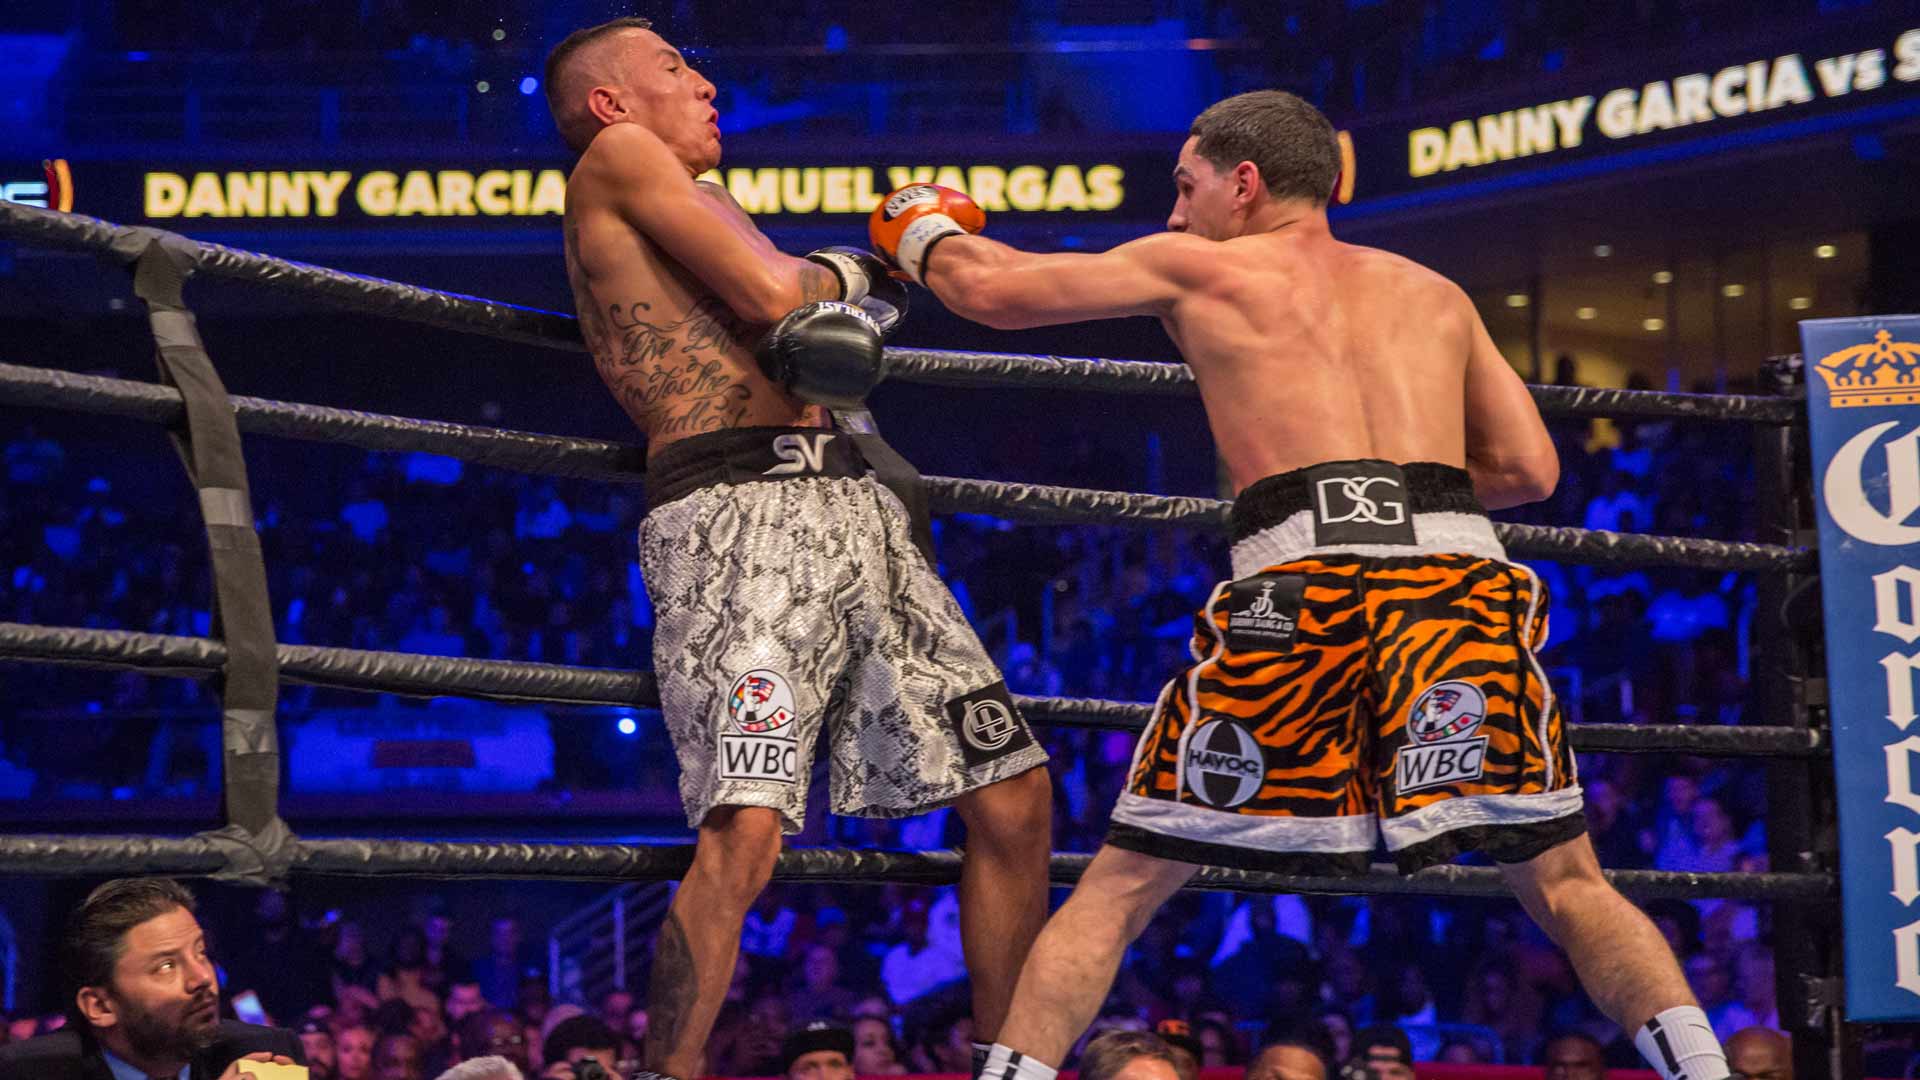 Garcia vs Vargas full fight: November 12, 20161920 x 1080